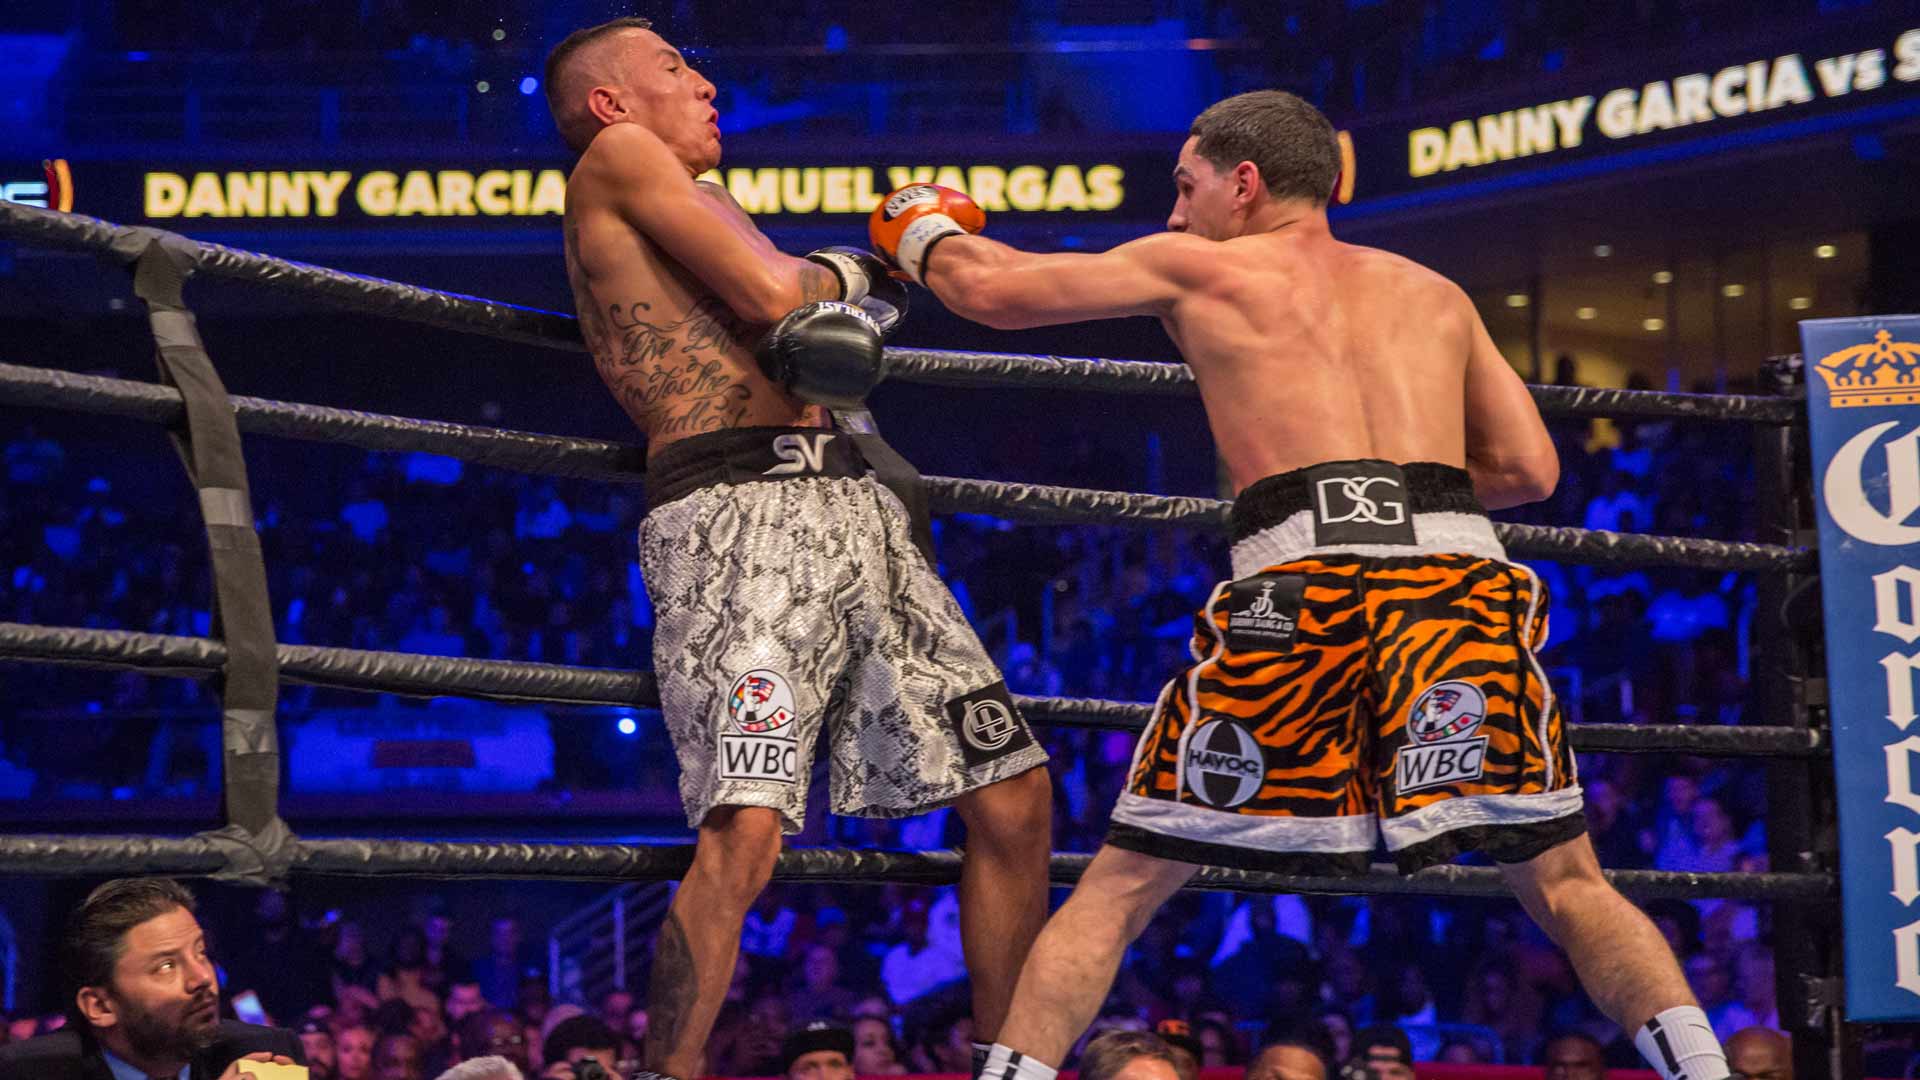 Garcia vs Vargas full fight: November 12, 20161920 x 1080